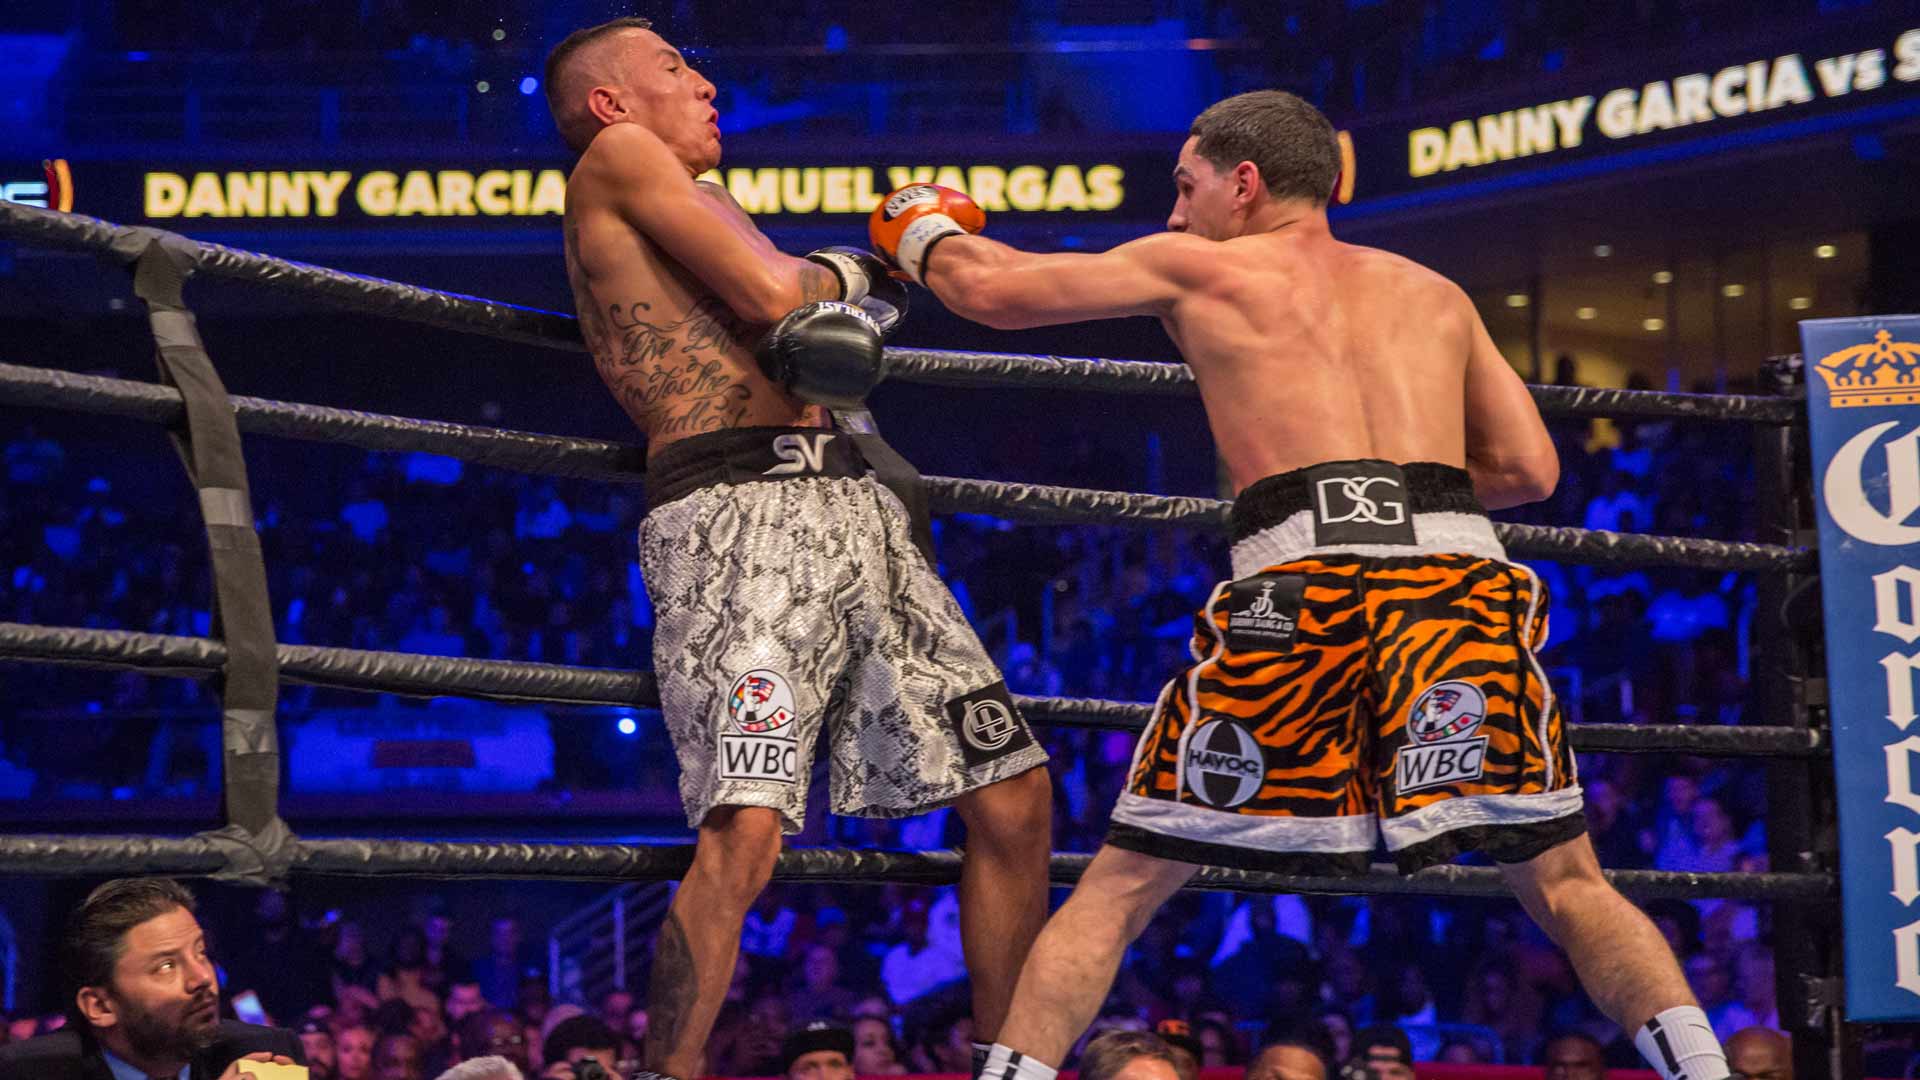 Garcia vs Vargas full fight: November 12, 20161920 x 1080